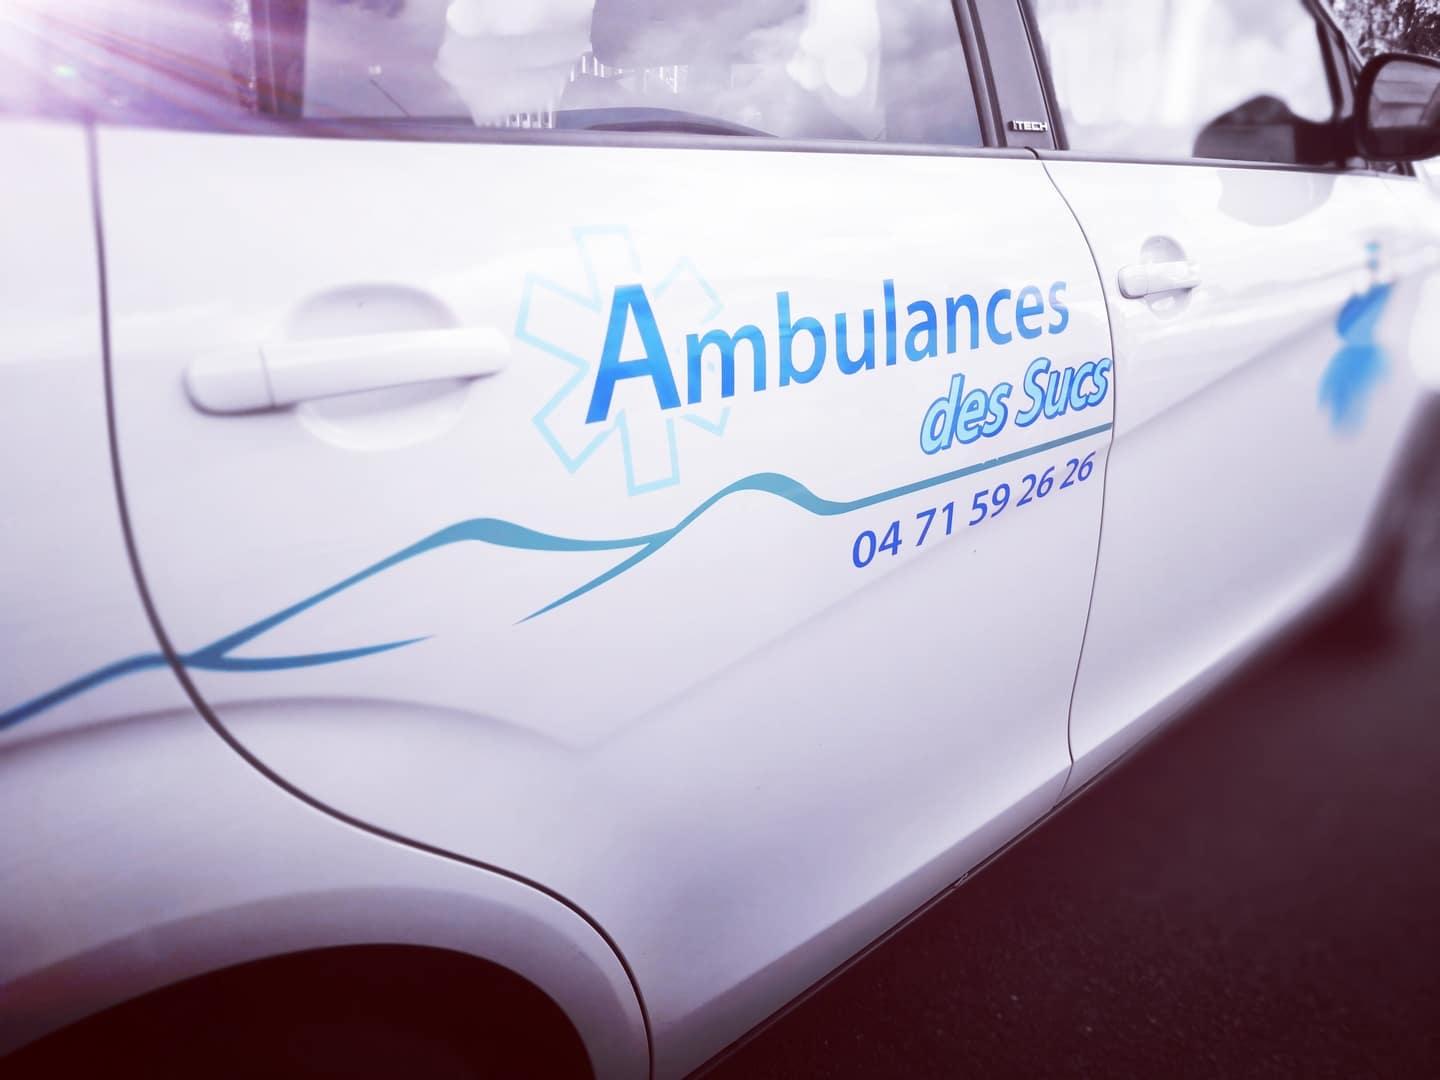 Ambulances des sucs à Yssingeaux 